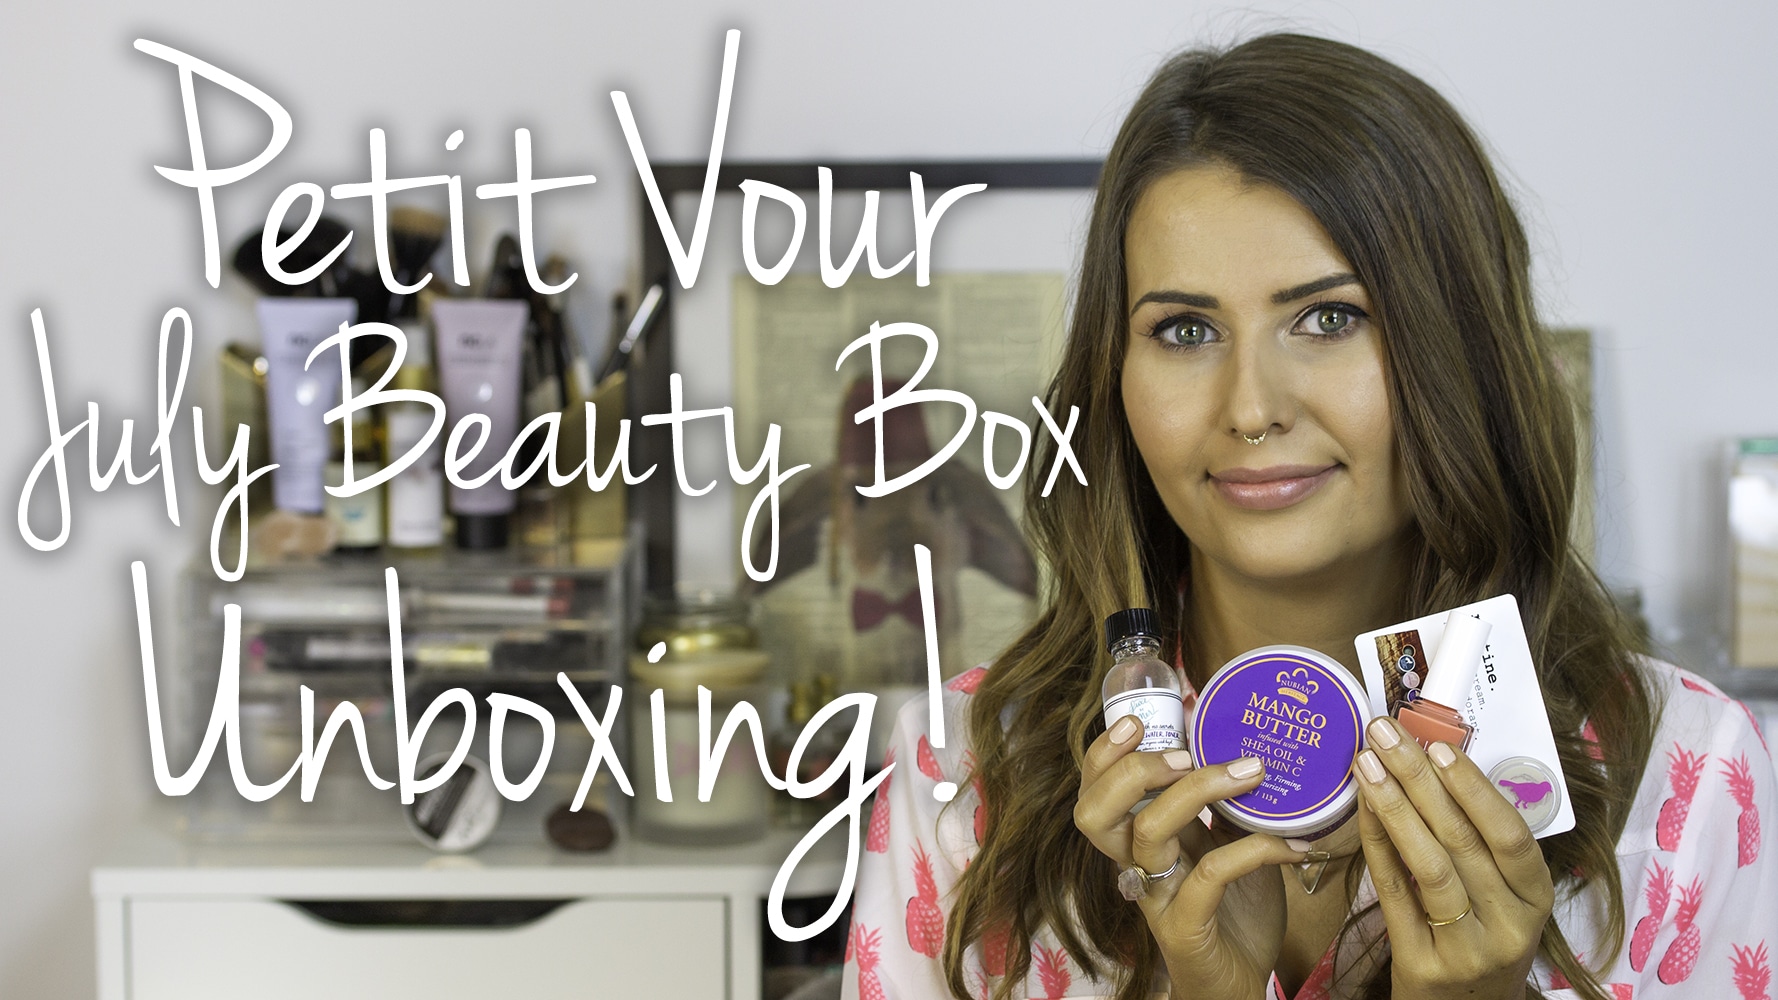 Petit Vour July 2015 Beauty Box Video